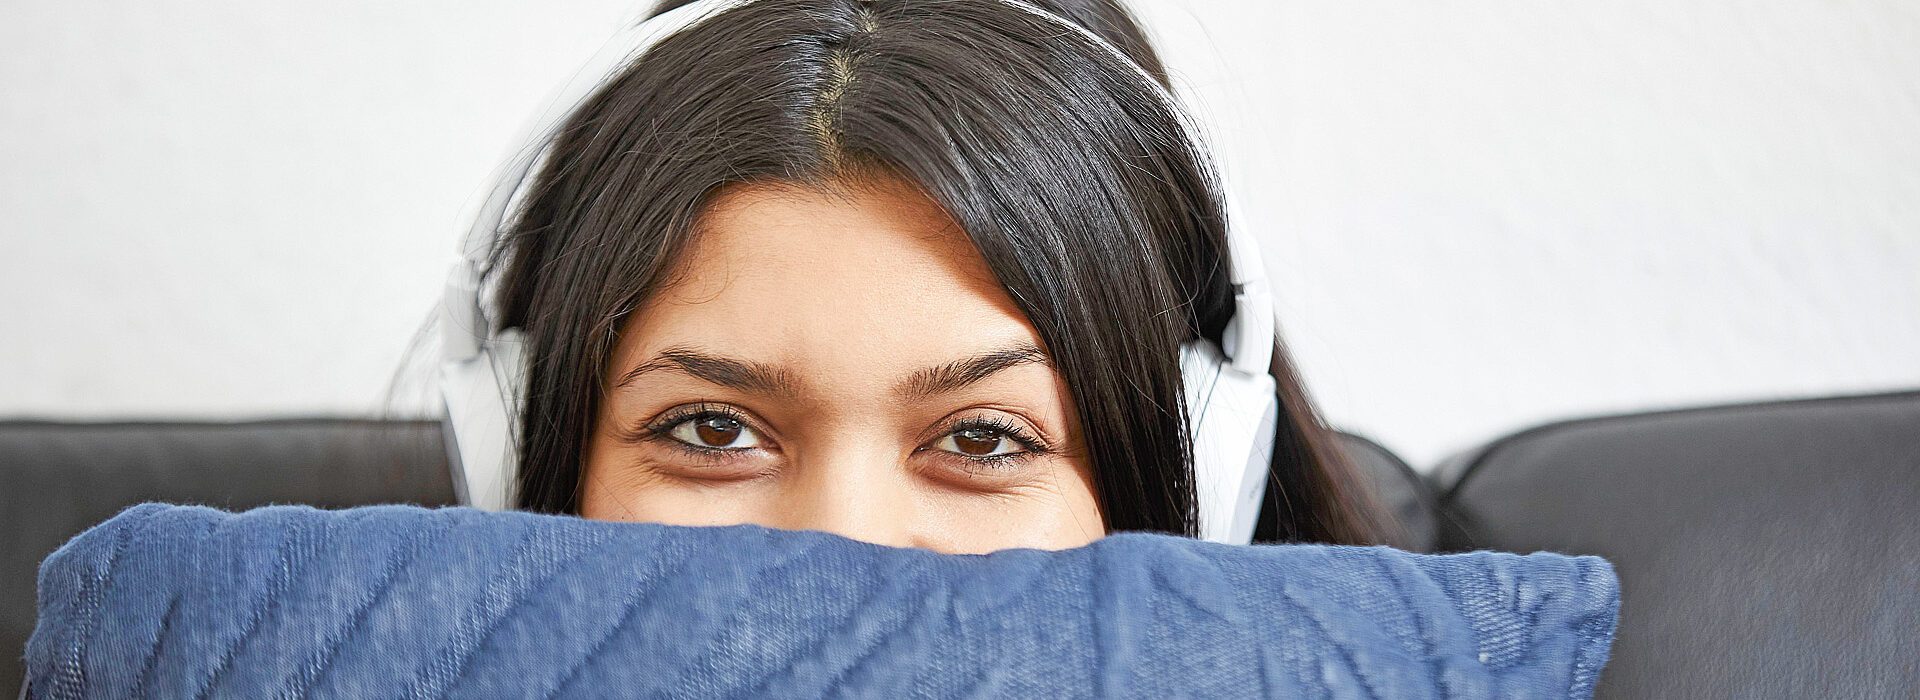 Foto: Junge Frau mit Kopfhörern hält ein Kissen - sozialpädagogisch betreutes Wohnen